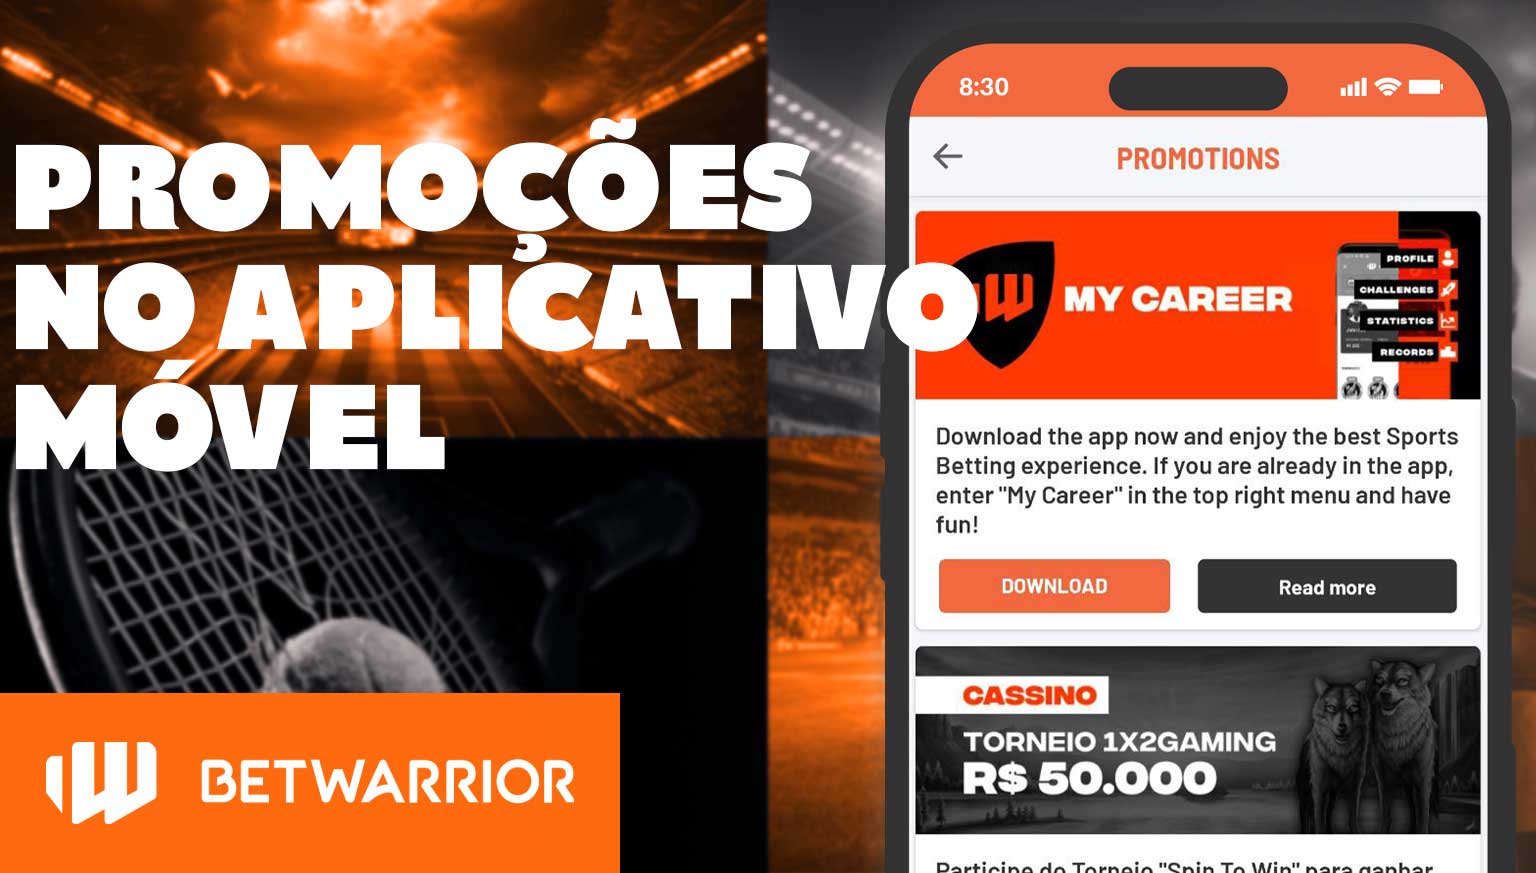 Informações detalhadas sobre as promoções no aplicativo móvel BetWarrior.